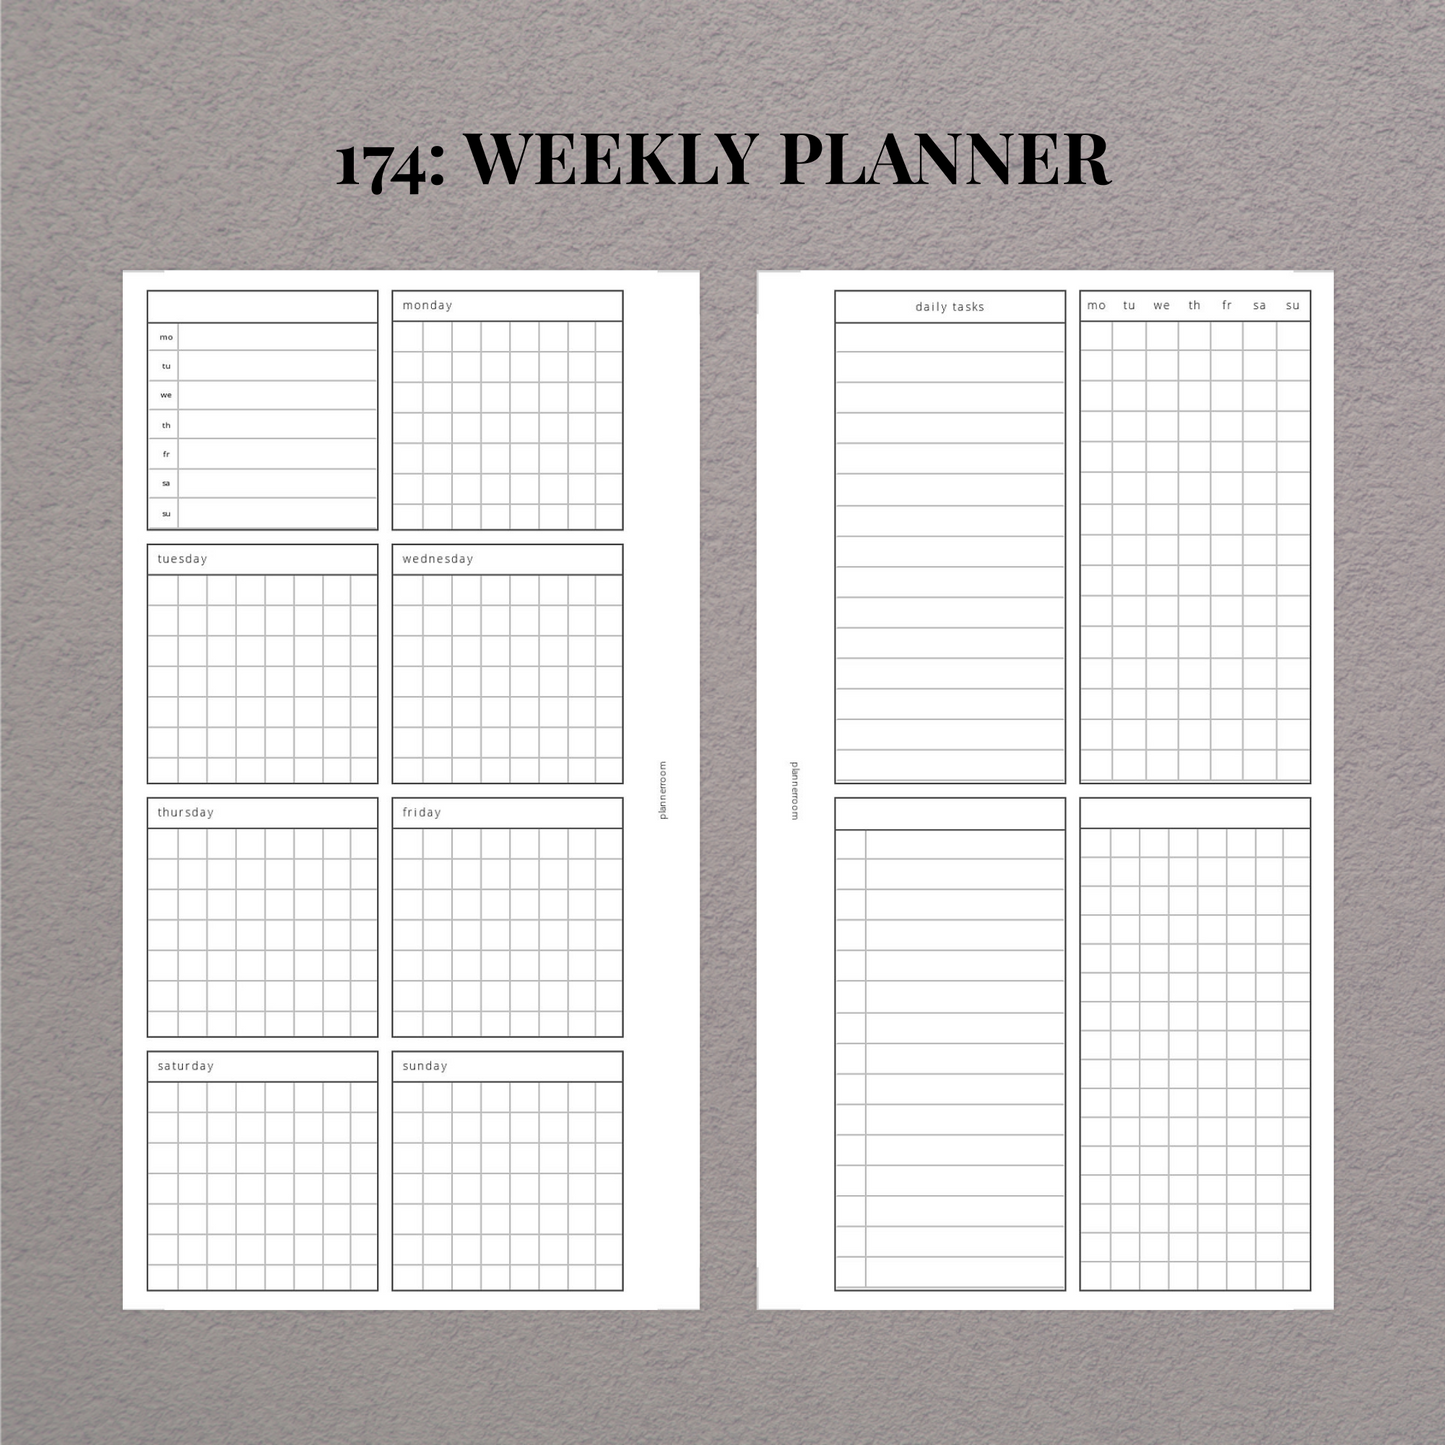 Weekly planner | Printable week | 174